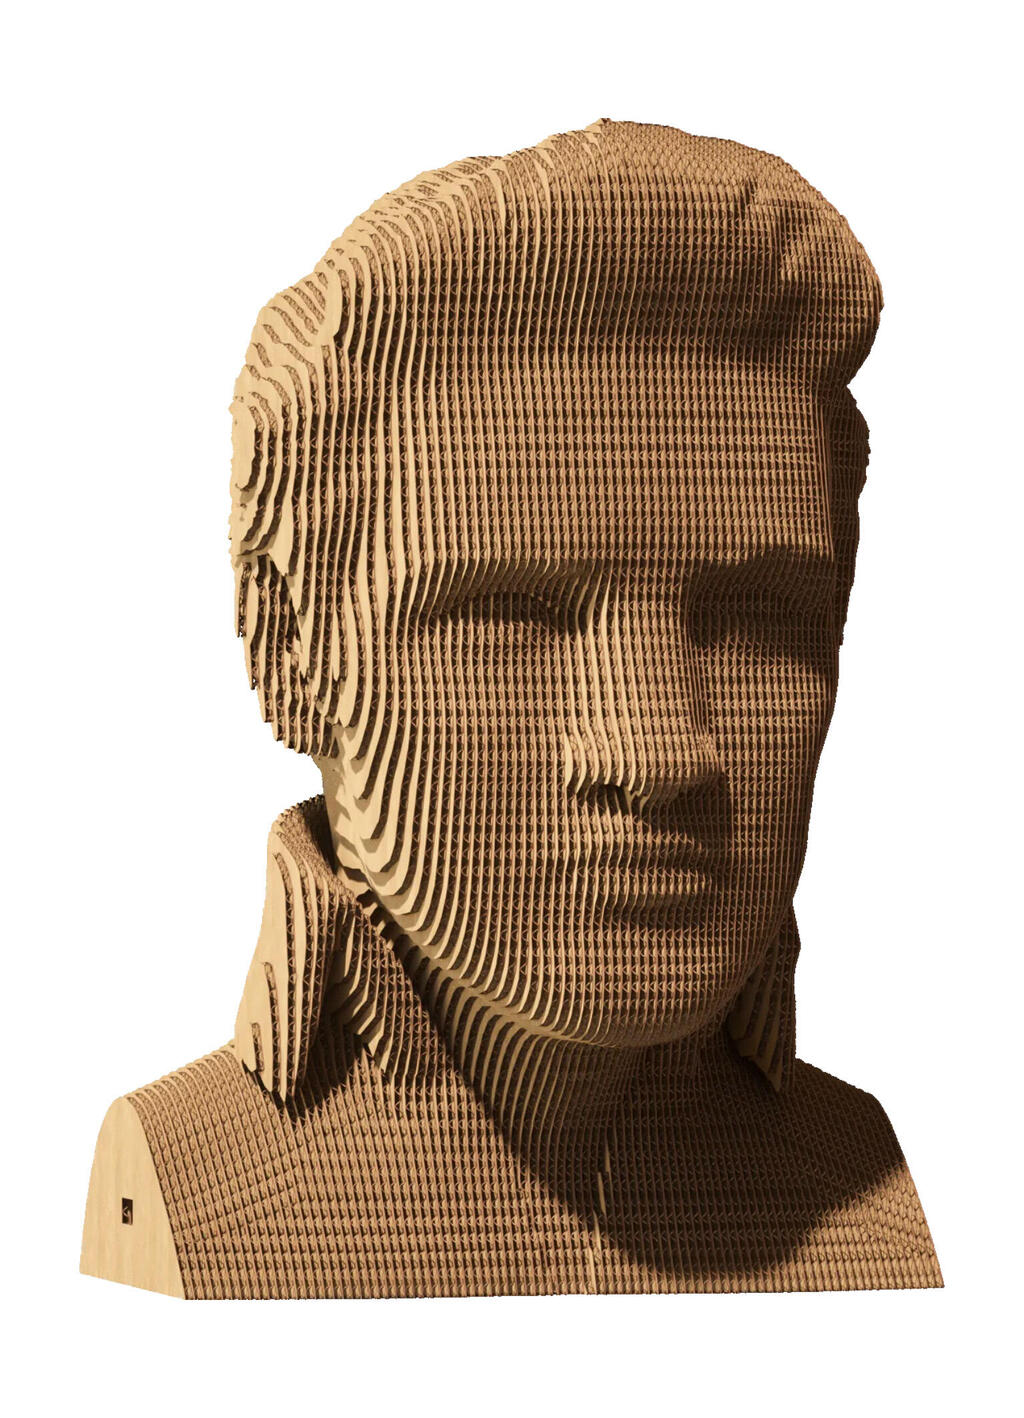 פאזל אומנותי תלת-ממד אלביס פרסלי עשוי מקרטון, רשת ג׳נטלמן